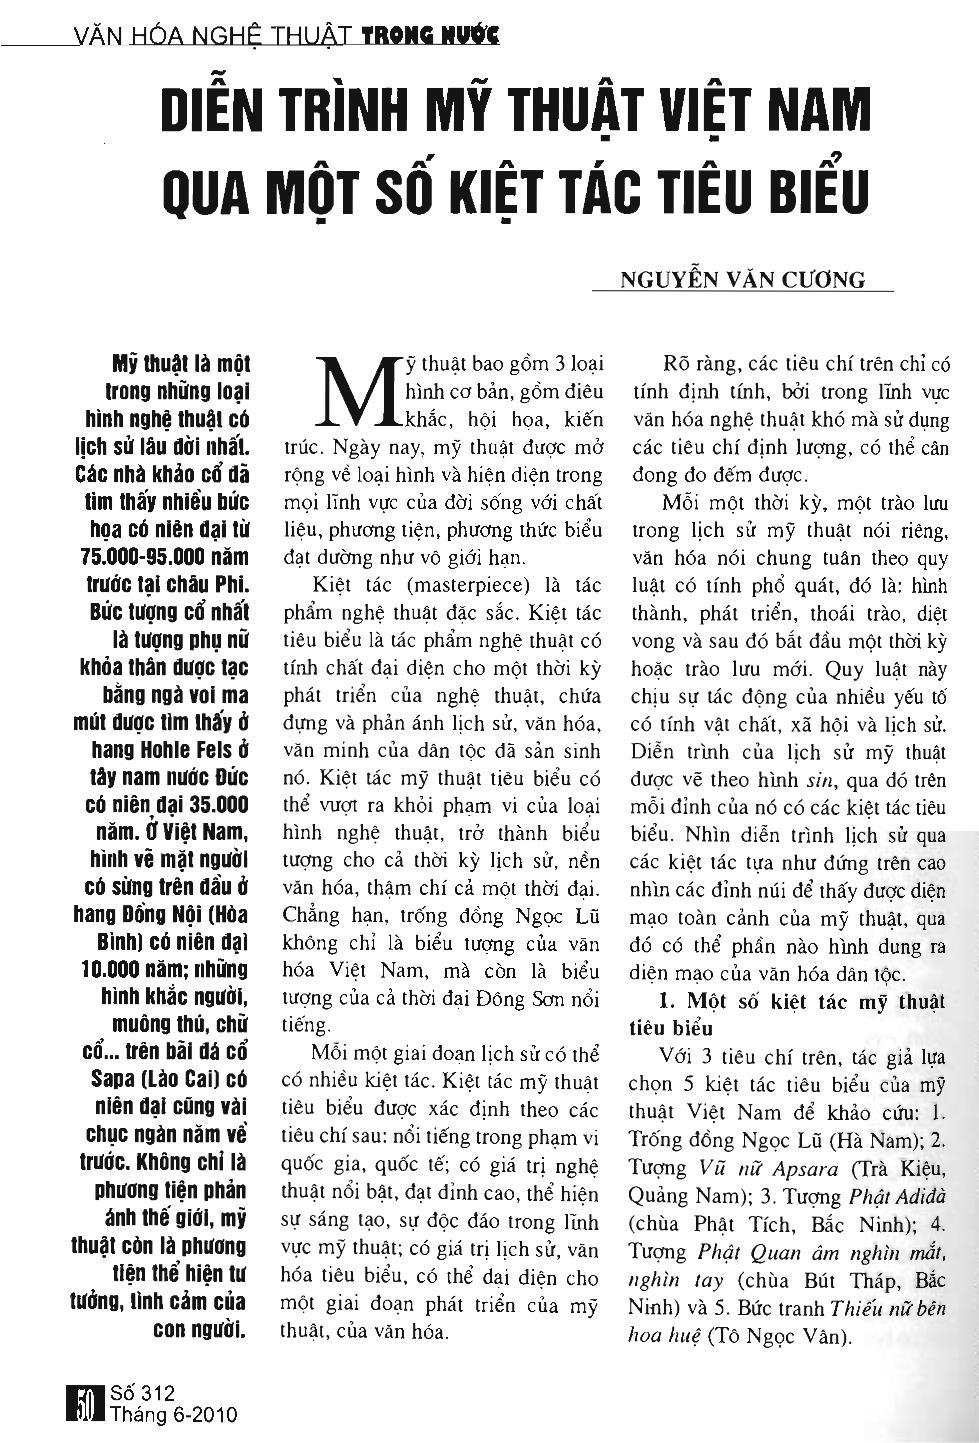 Diễn trình Mĩ thuật Viet Nam qua một số kiệt tác tiêu biểu trang 1